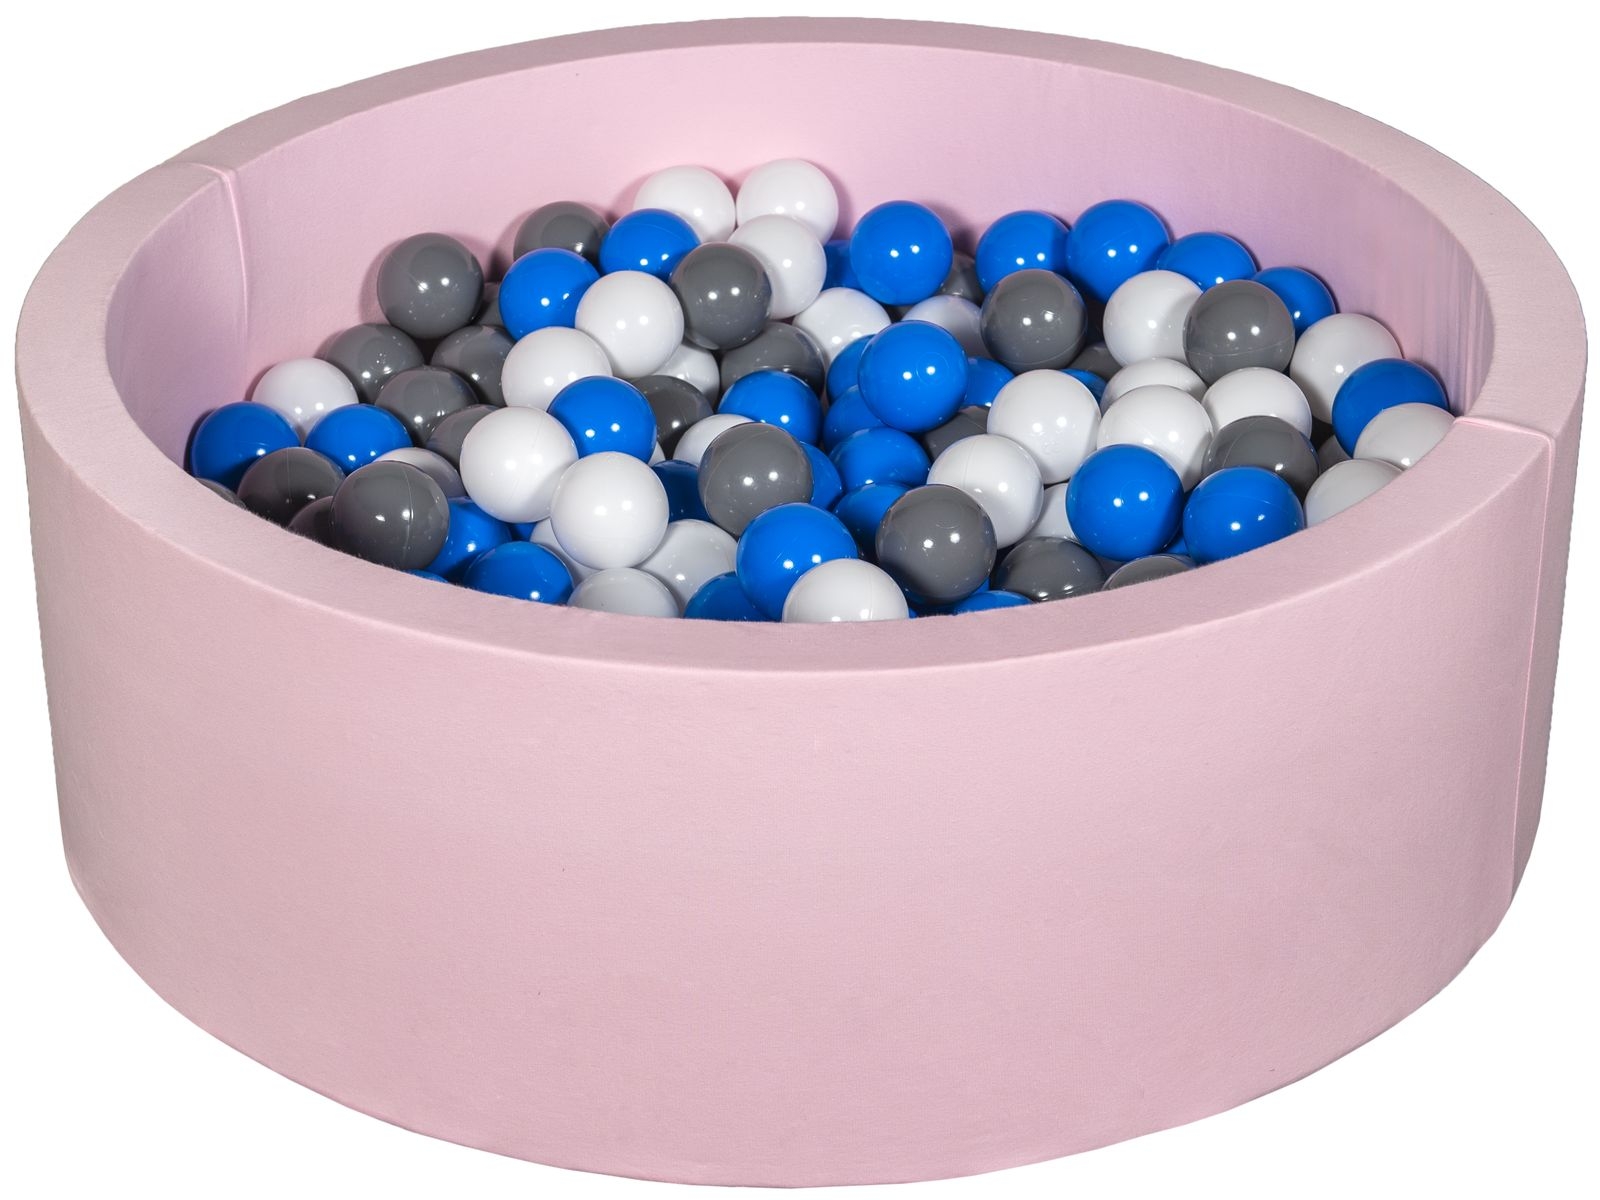 Bällebad Ballpool Kugelbad Bällchenbad Bällchenpool Kinder-Pool+200 Bällen rosa 